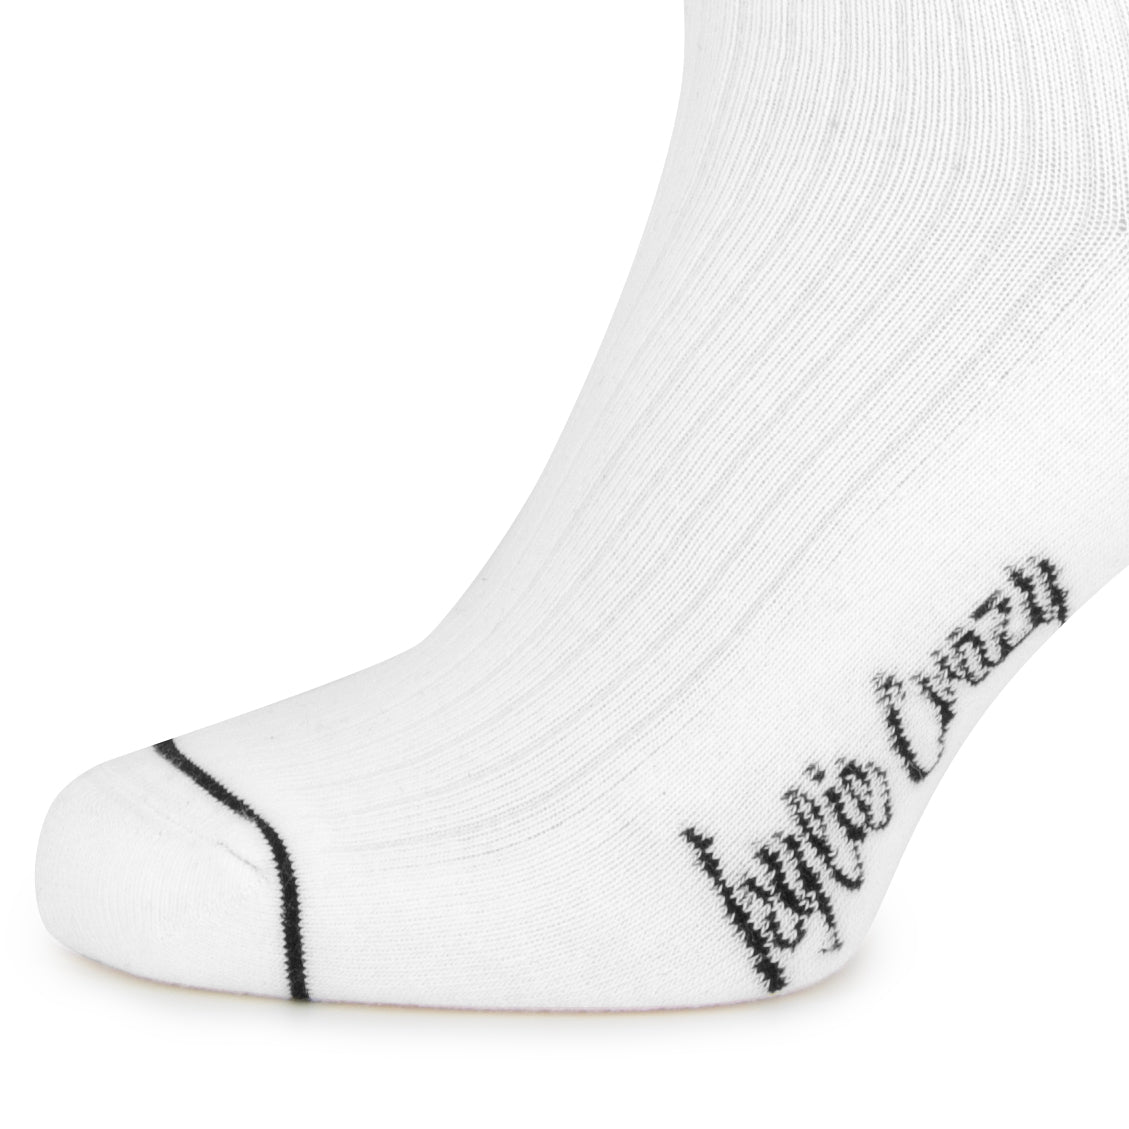 Calcetines invisibles "pies delicados" color blanco de algodón con acolchado superior en la planta-Kylie Crazy